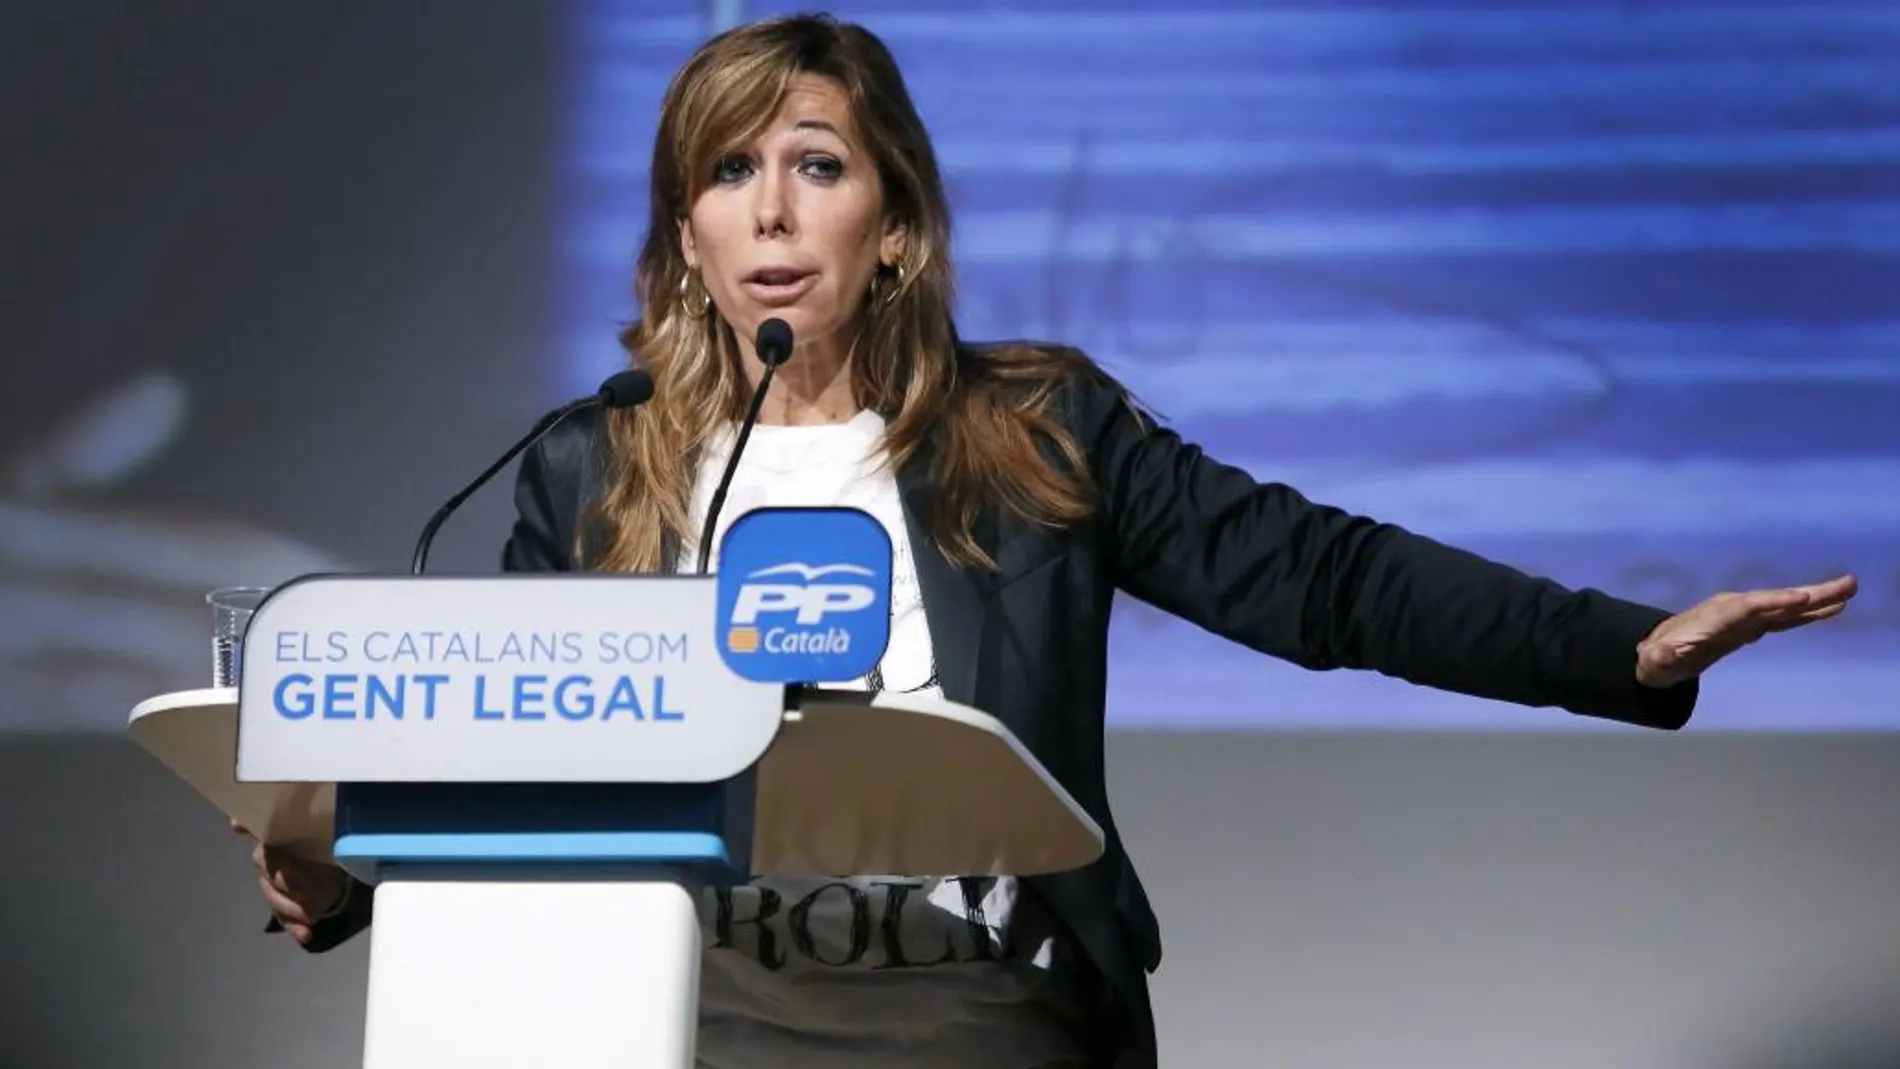 La presidenta del PPC, Alícia Sánchez-Camacho durante su intervención en el acto de presentación del candidato a la alcaldía de Sabadell, Esteban Gesa